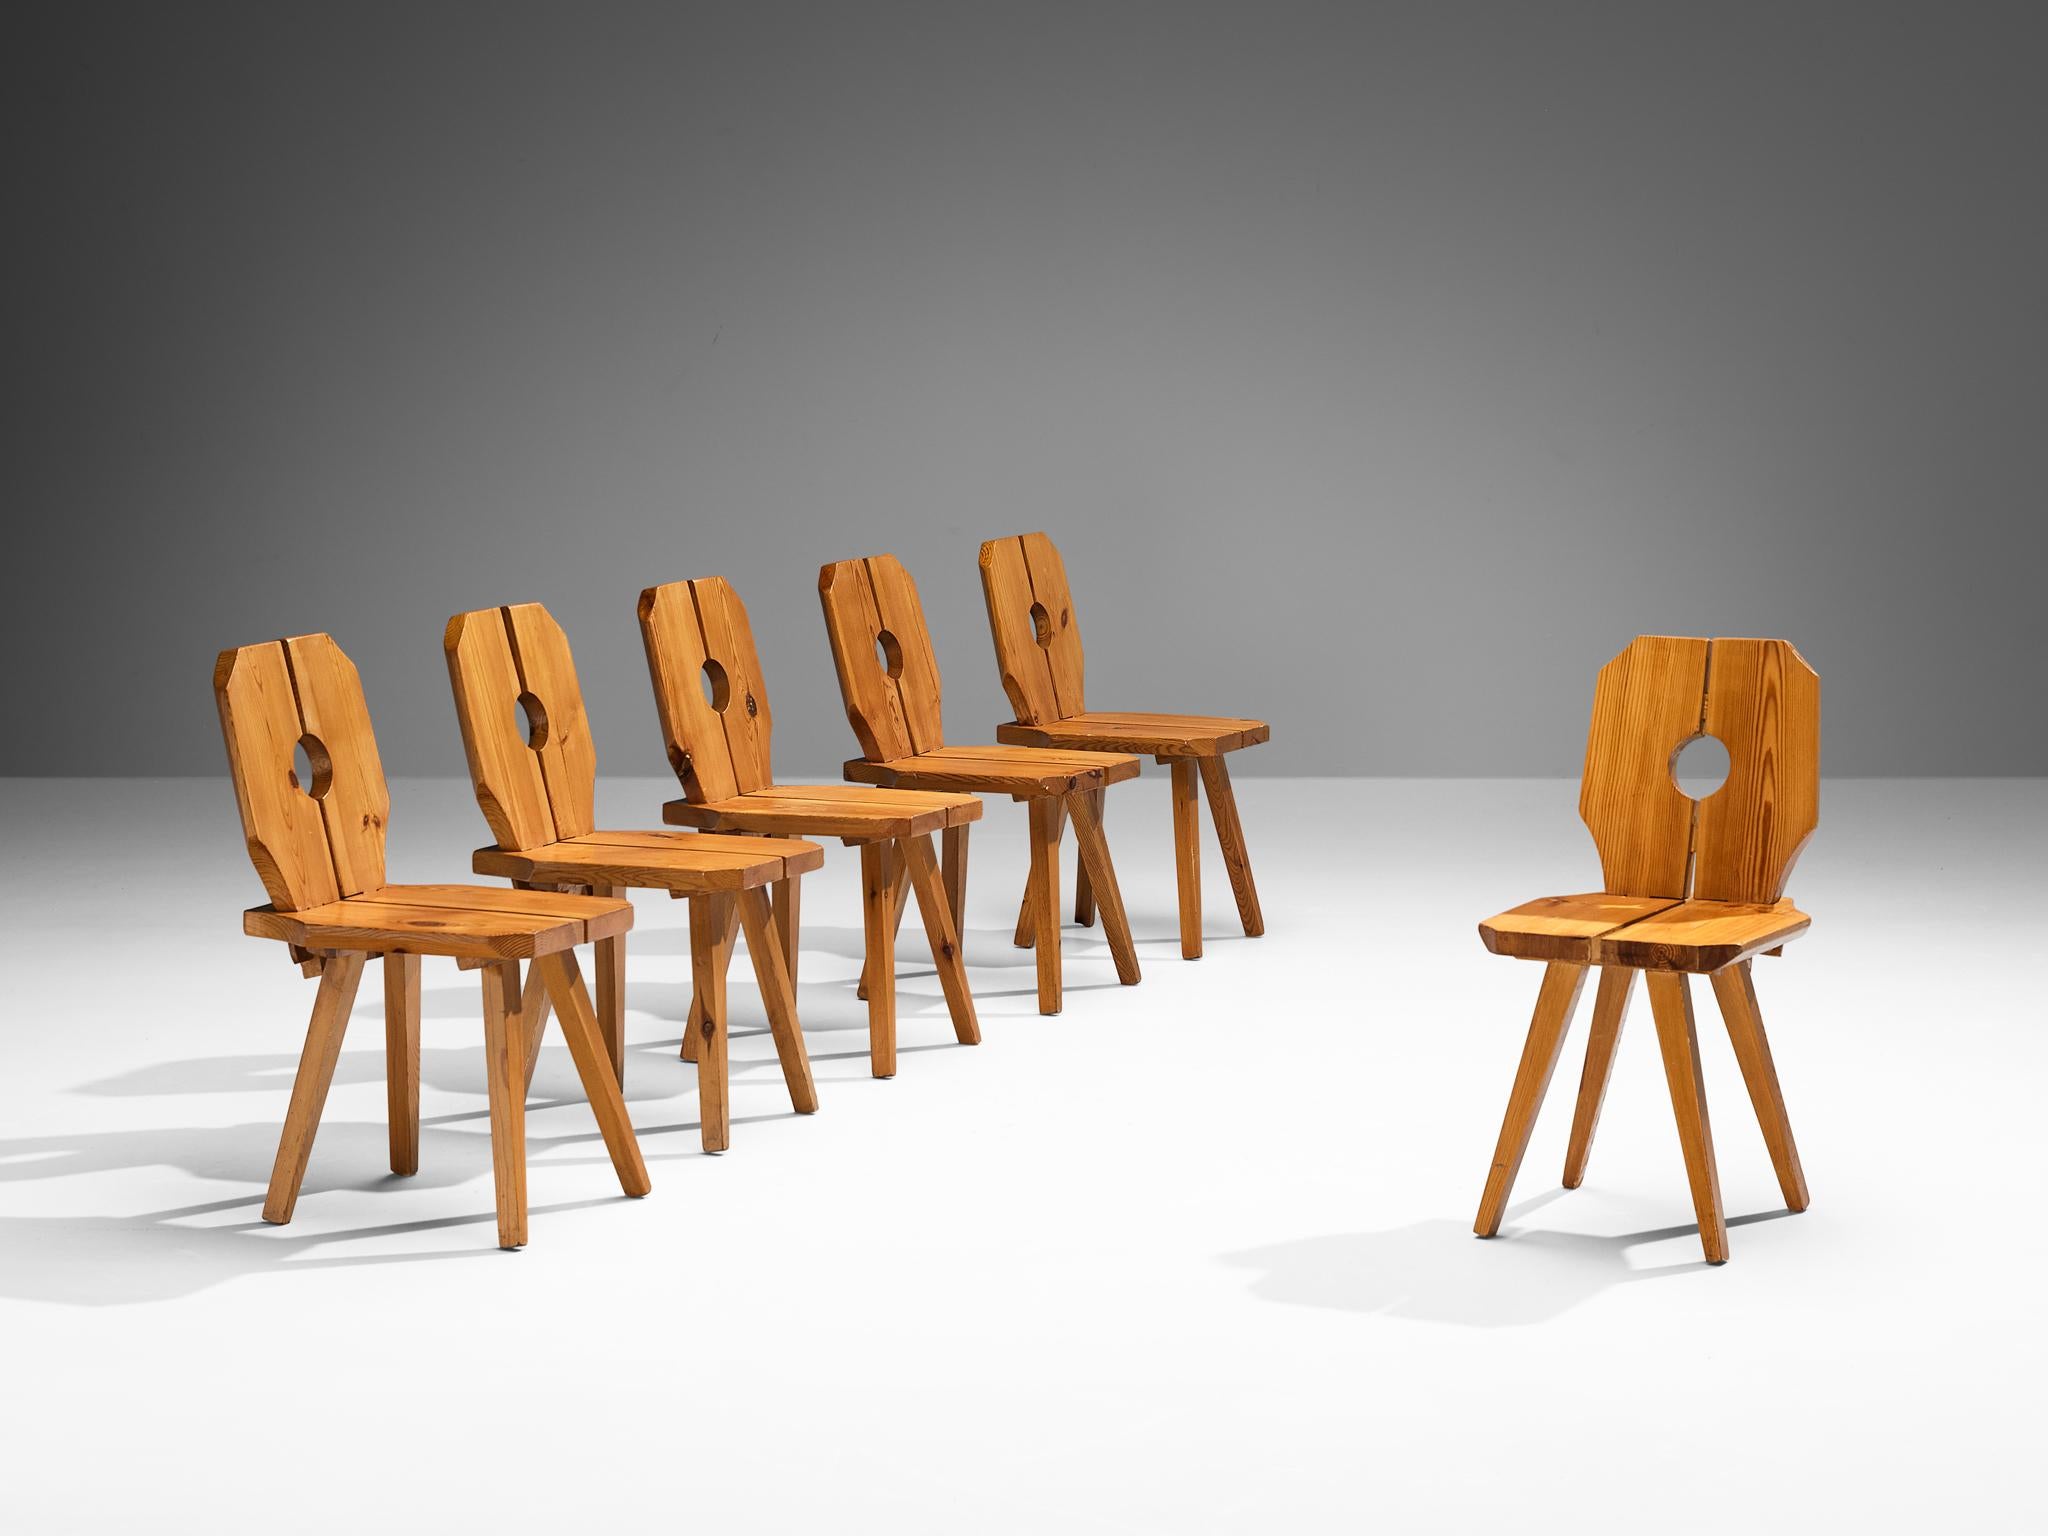 Ensemble de six chaises de salle à manger en pin massif, Europe, années 1960

Chaises de salle à manger sculptées en pin au grain expressif. De nombreux éléments caractérisent l'aspect sculpté de cet ensemble de douze chaises. Tout d'abord, le